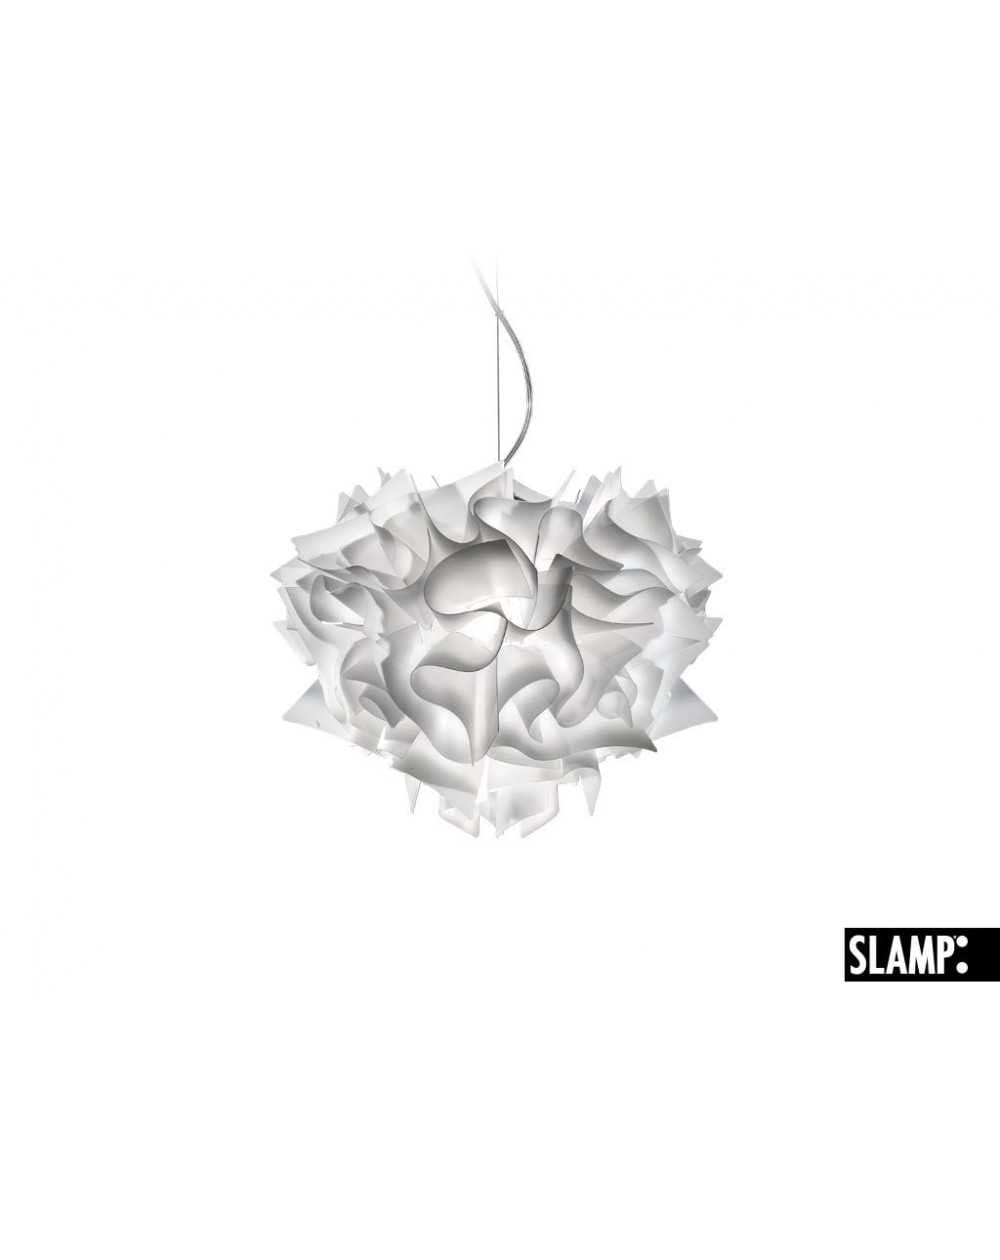 Lampadario a sospensione Veli by Slamp diametro 42 cm